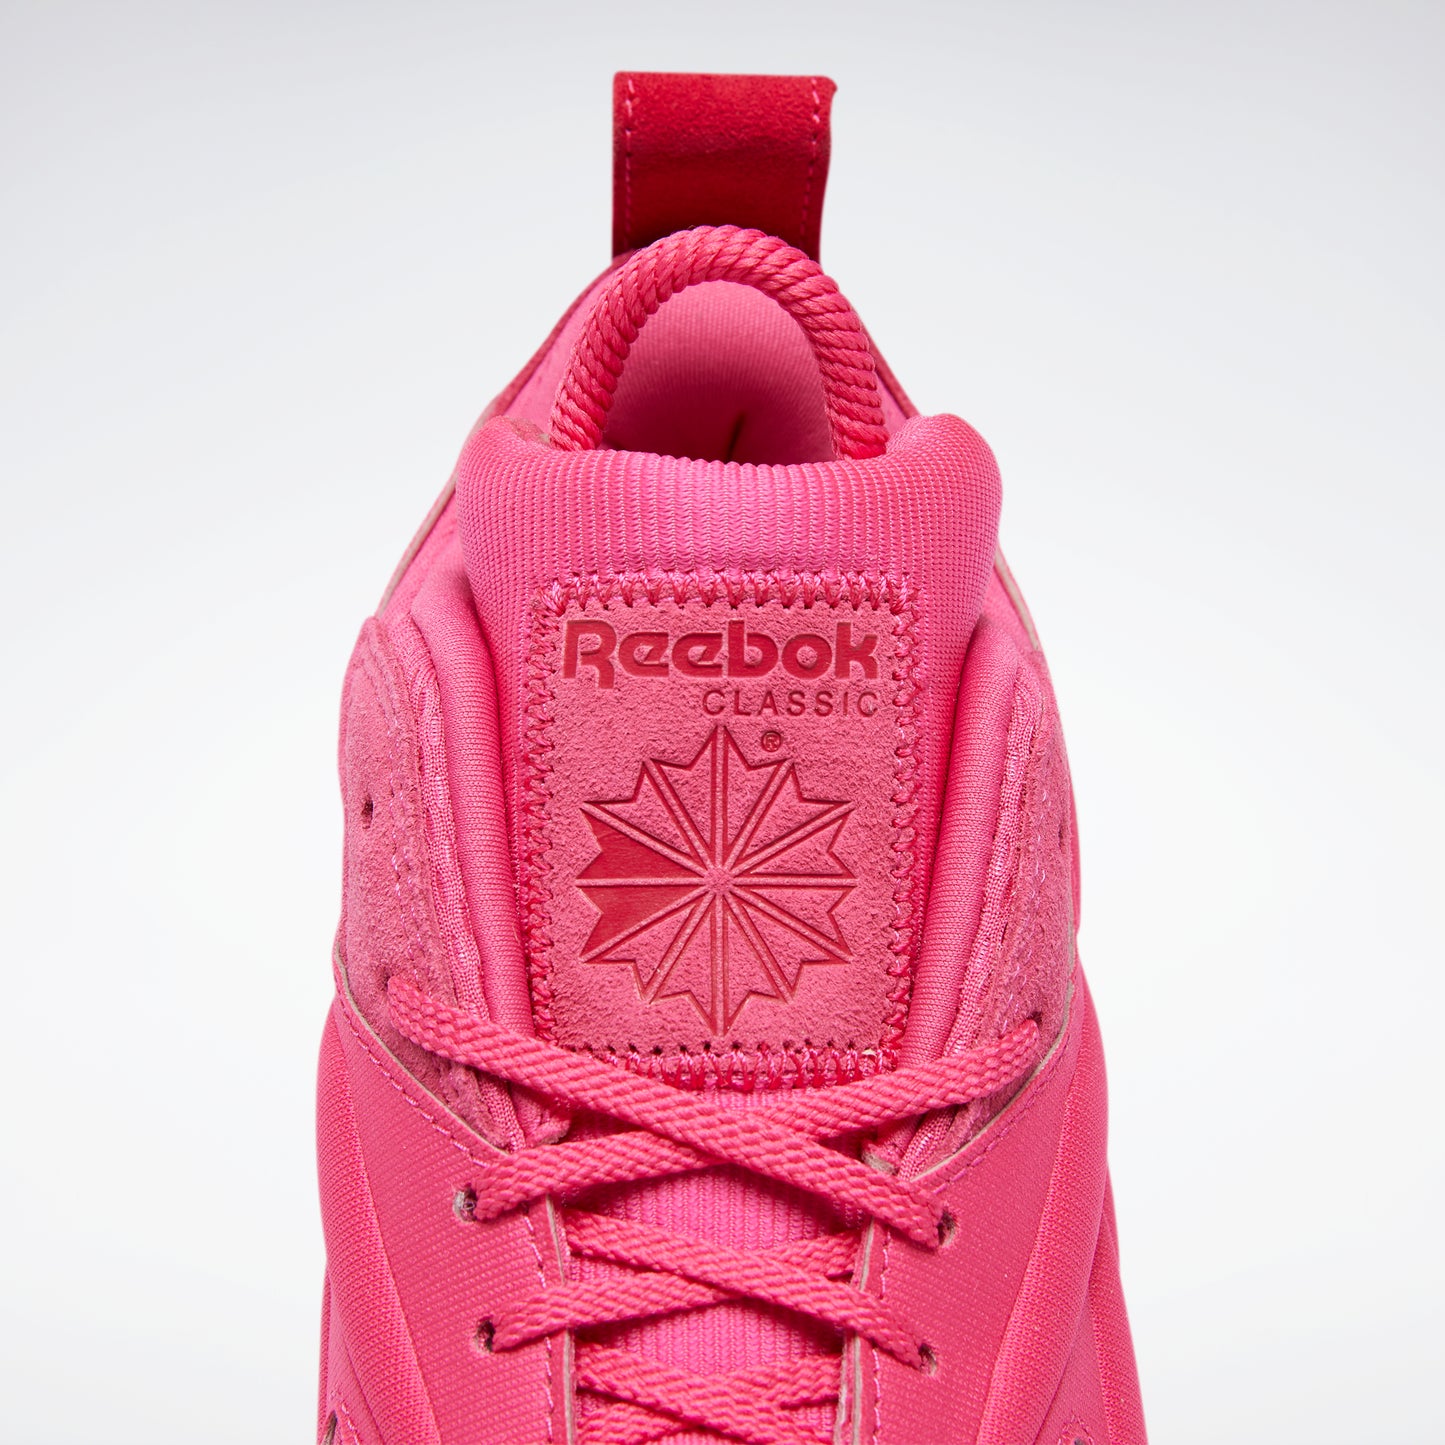 Reebok Footwear Women Cardi B Classic Leather V2 Shoes Pnkfus/Pnkfus/Pnkfus